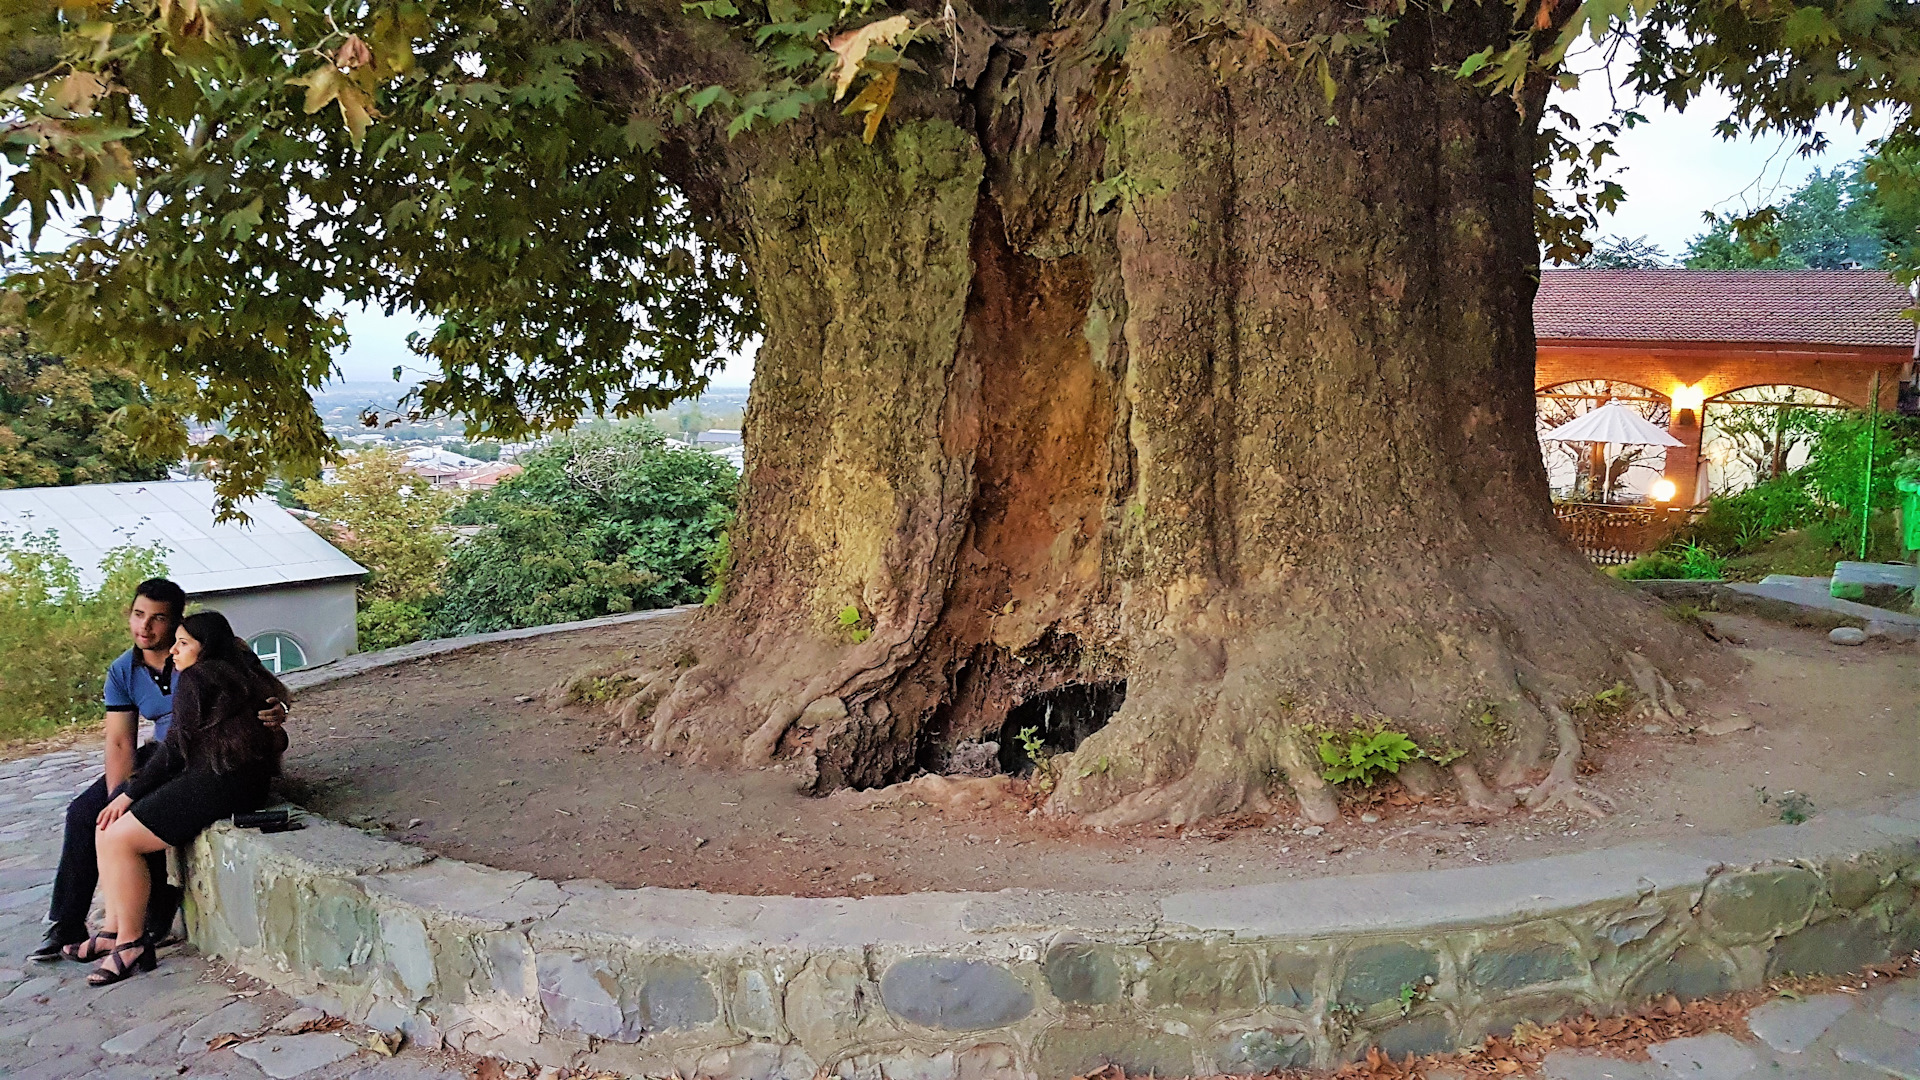 Это был огромный дуб. Румскулла дуб. Дуб парк Фредвилл, Нонингтон, Великобритания. Апшатнерский дуб. Запорожский дуб 700 лет.